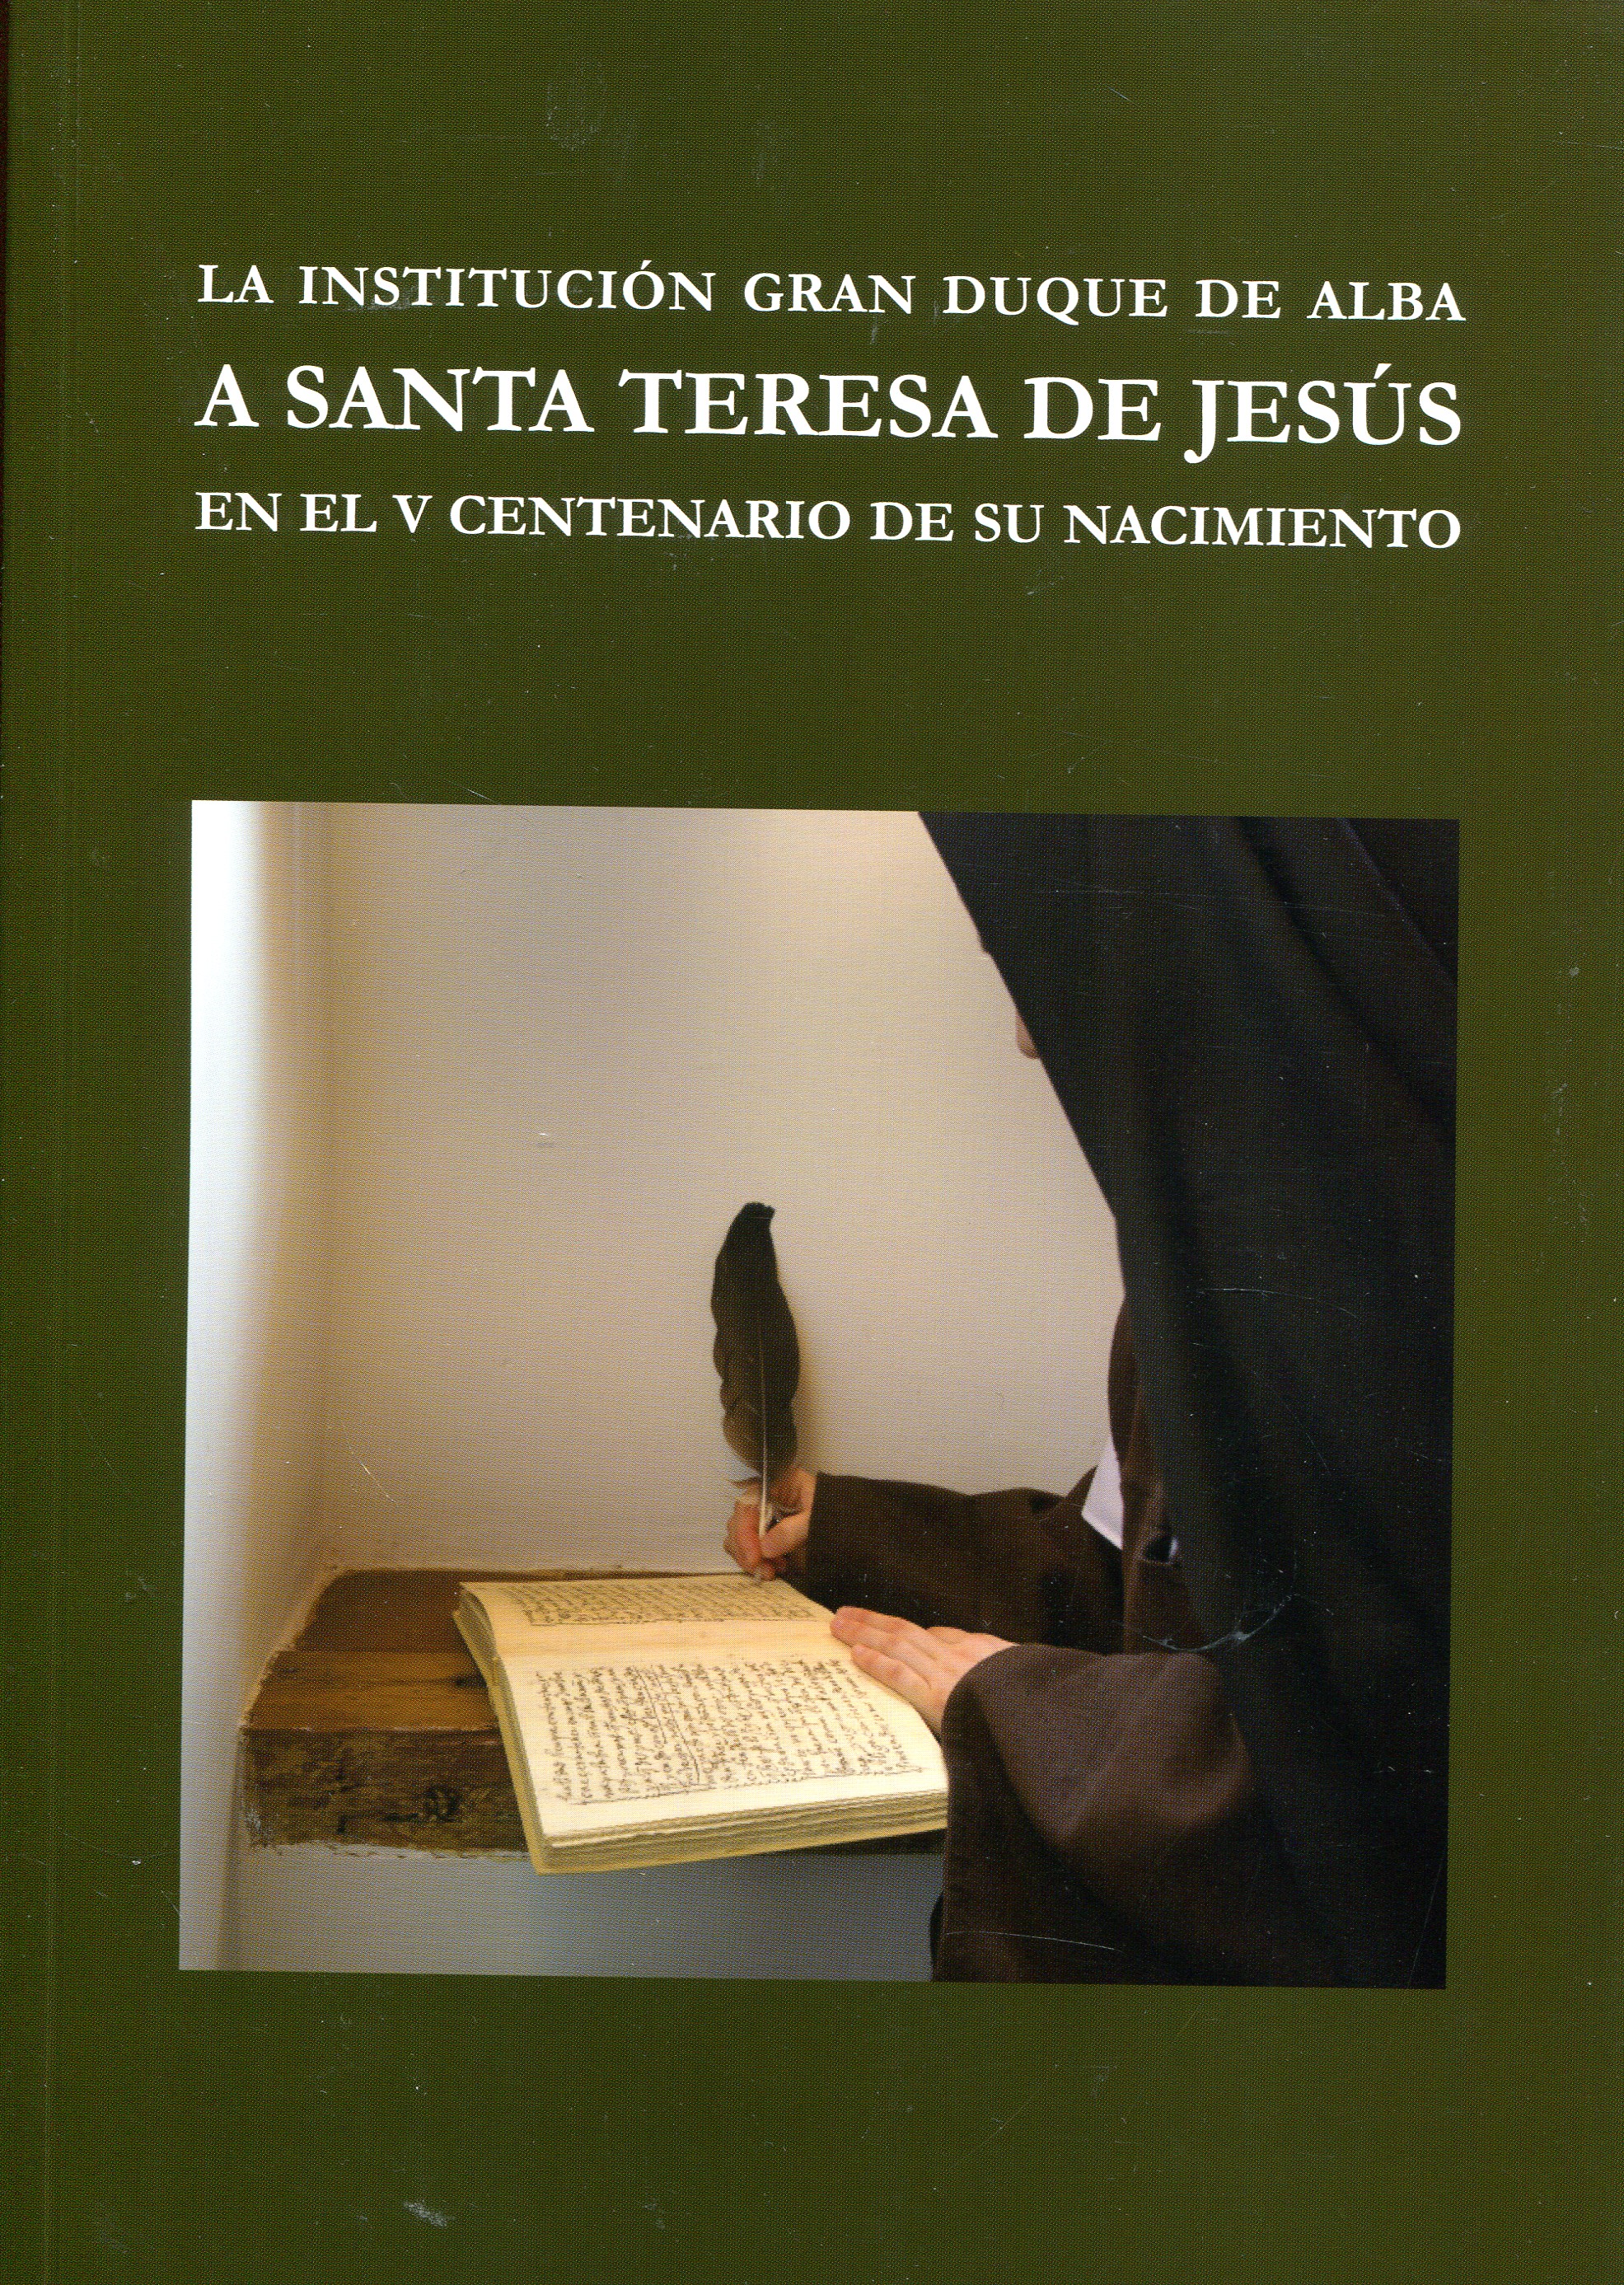 La Institución Gran Duque de Alba a Santa Teresa de Jesús